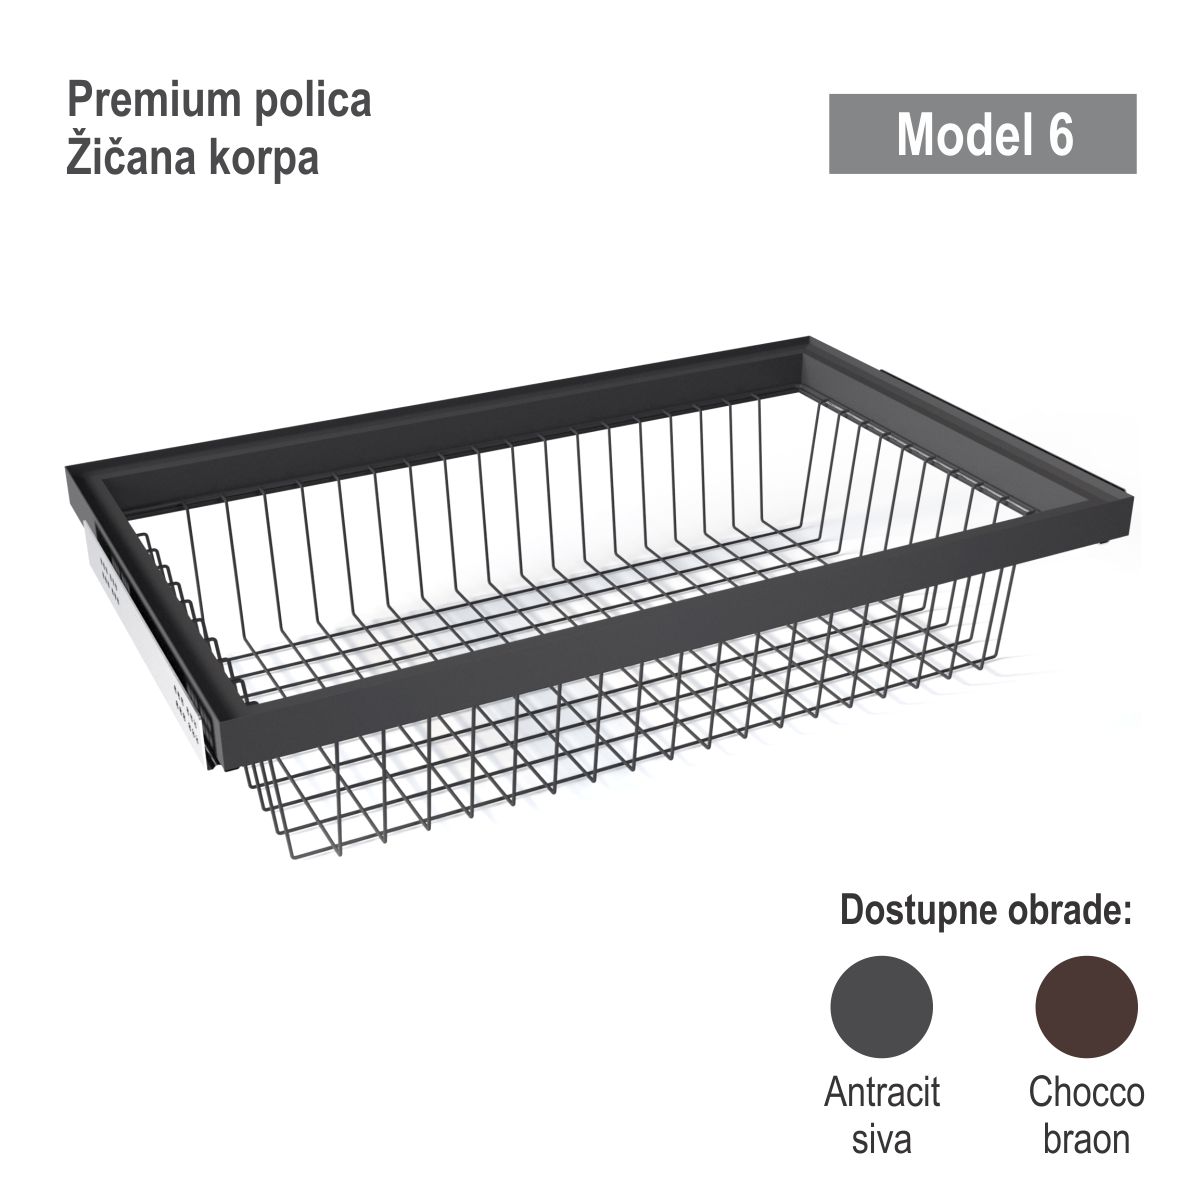 UP Premium polica - Model 6